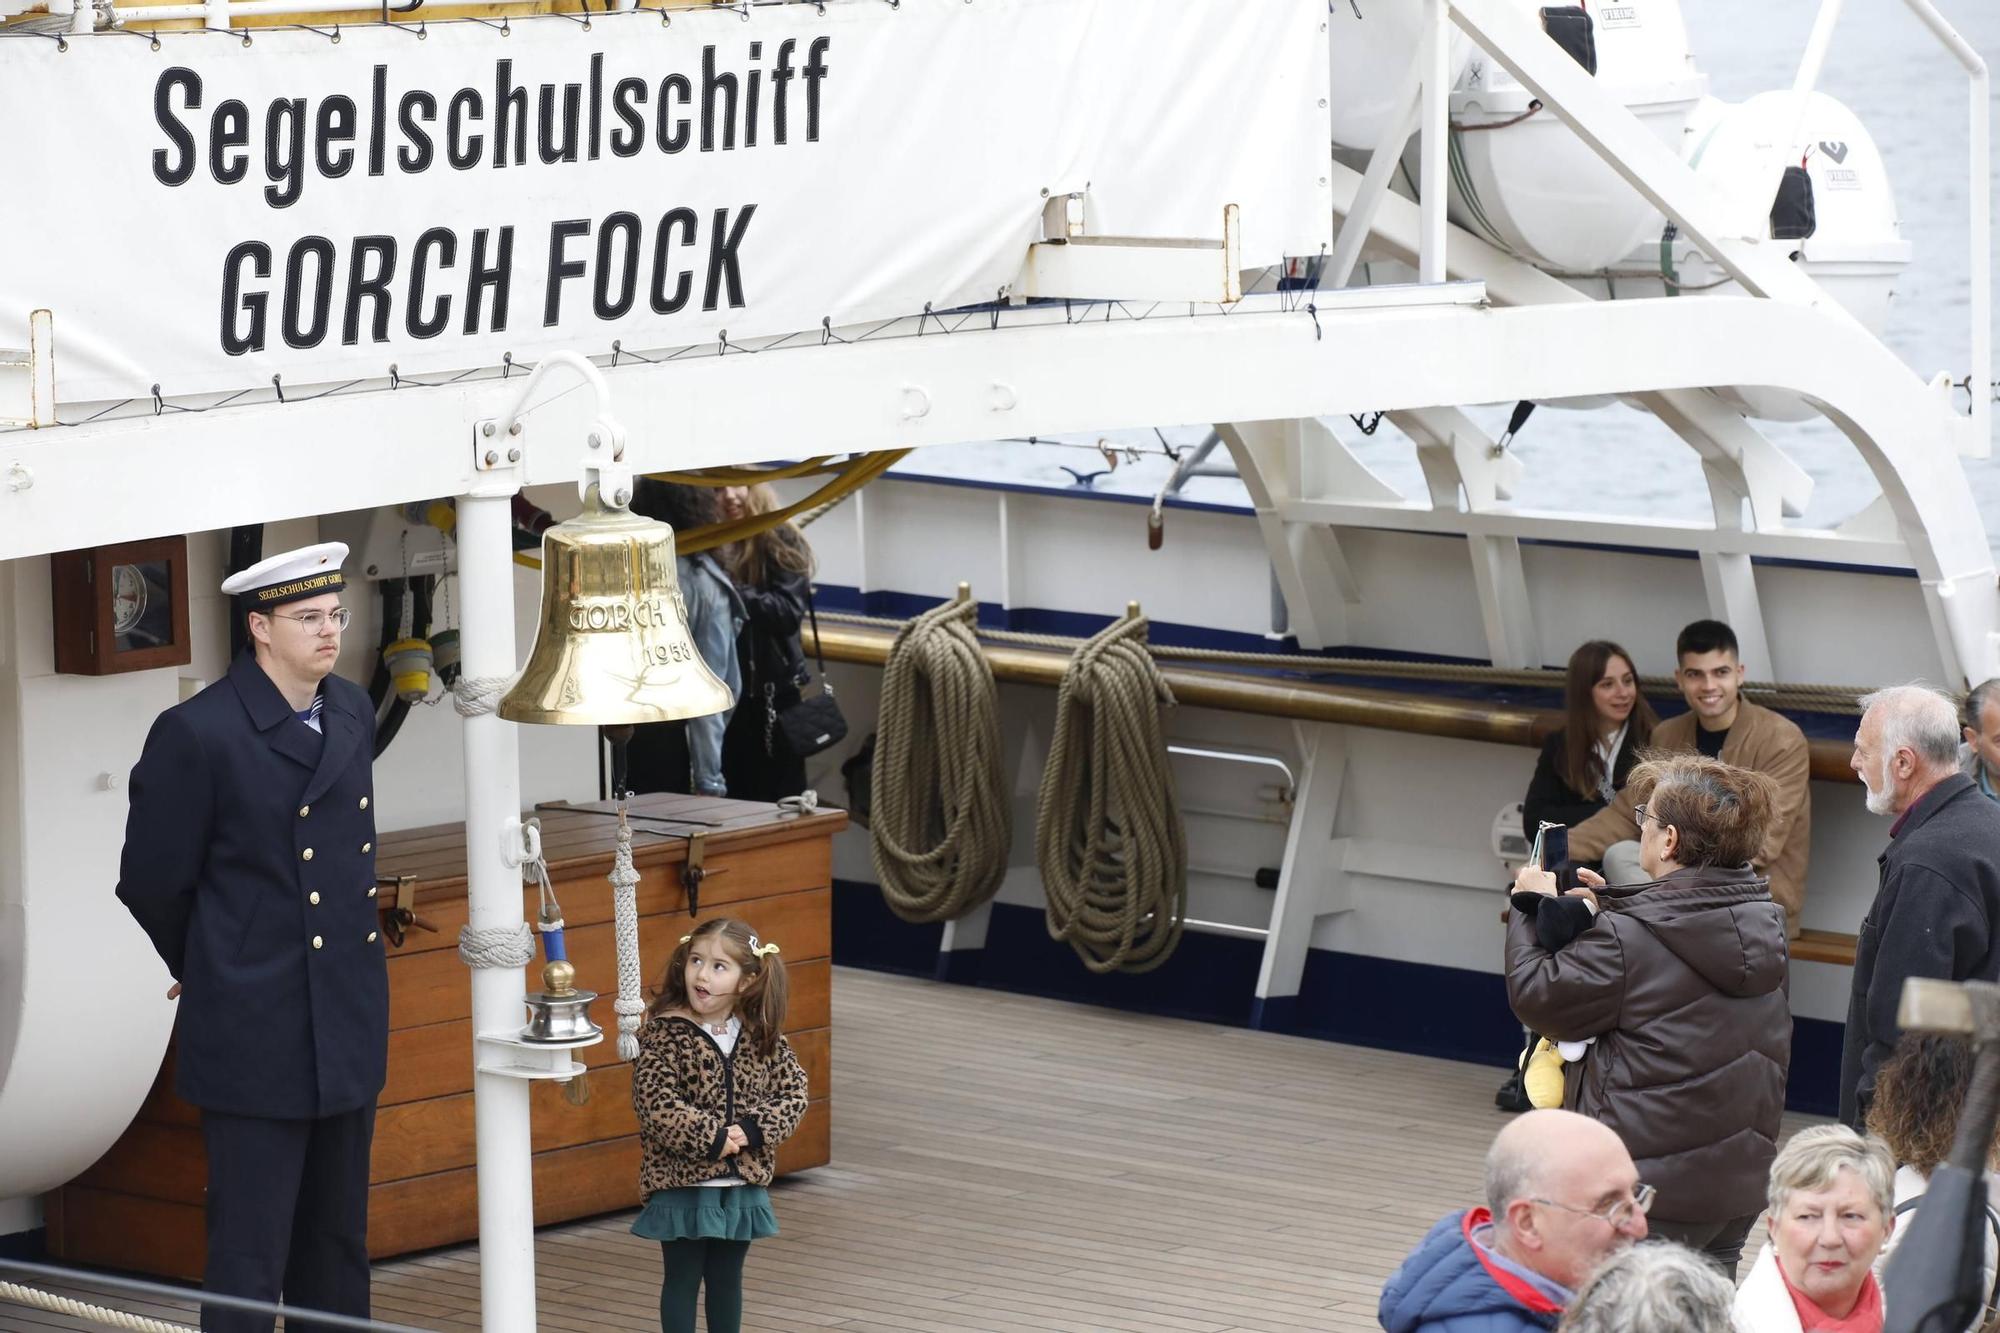 La jornada de puertas abiertas en el buque escuela "Gorch Fock", en imágenes